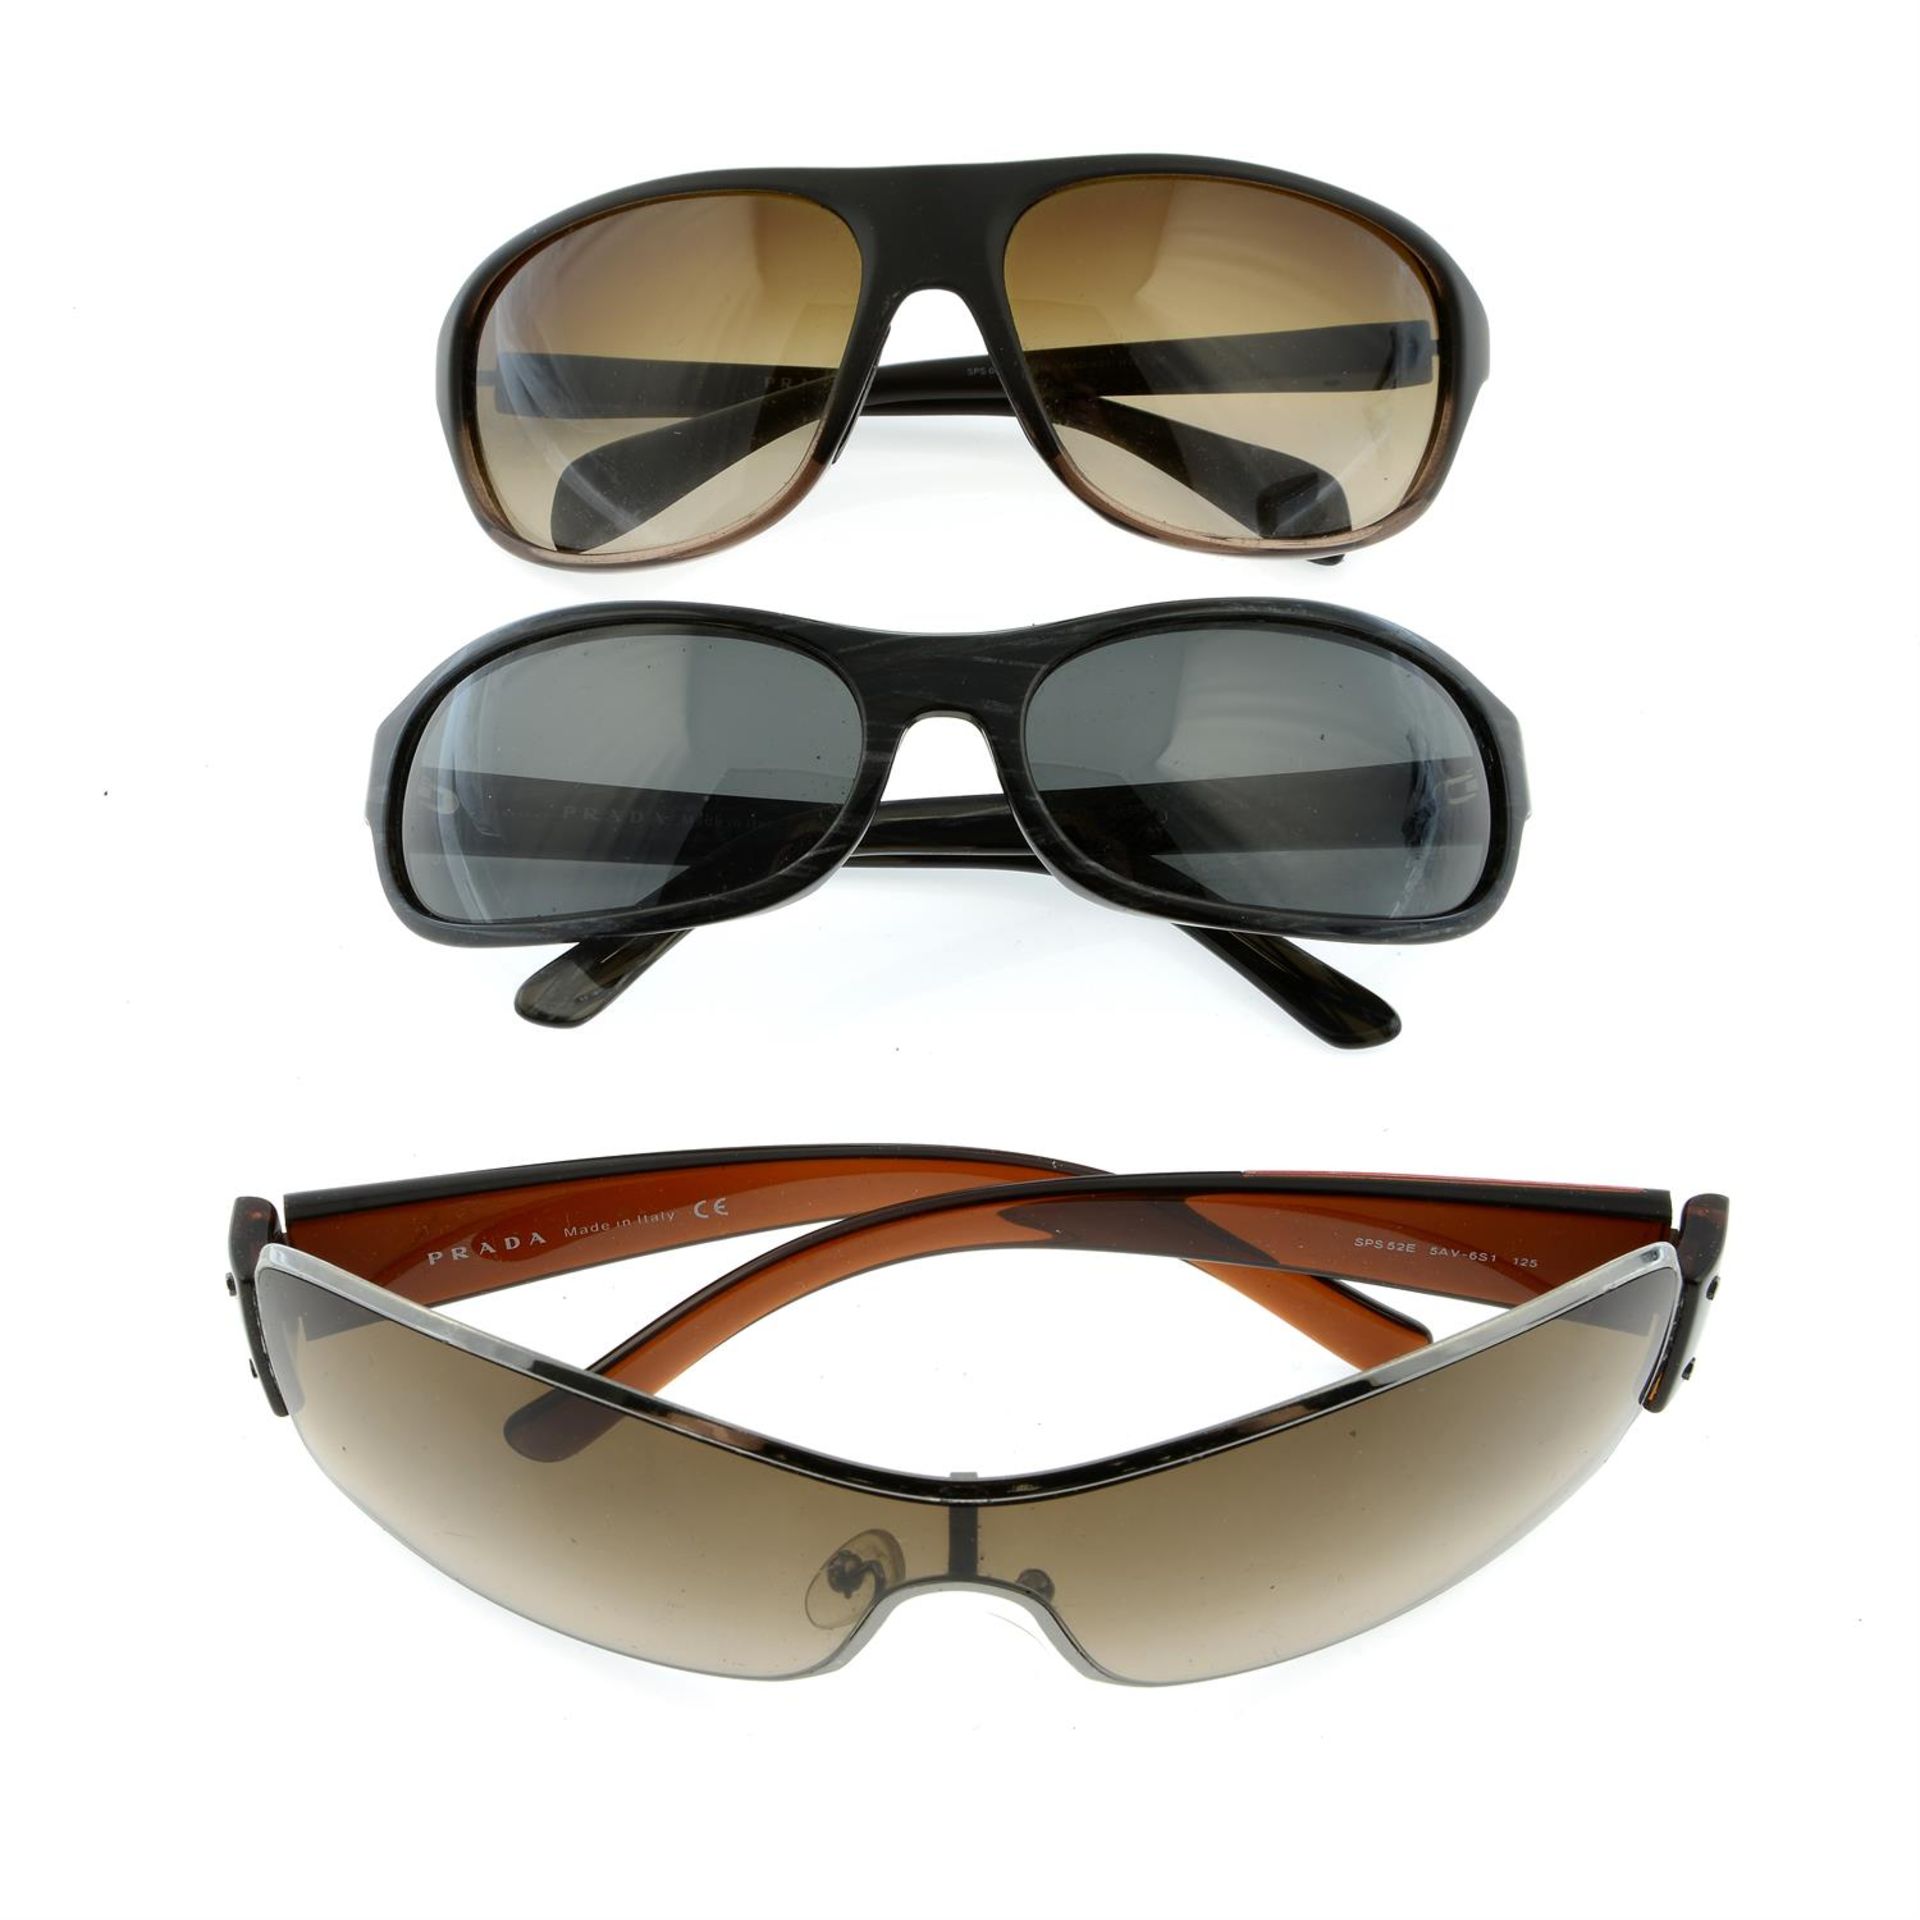 PRADA - three pairs of sunglasses.